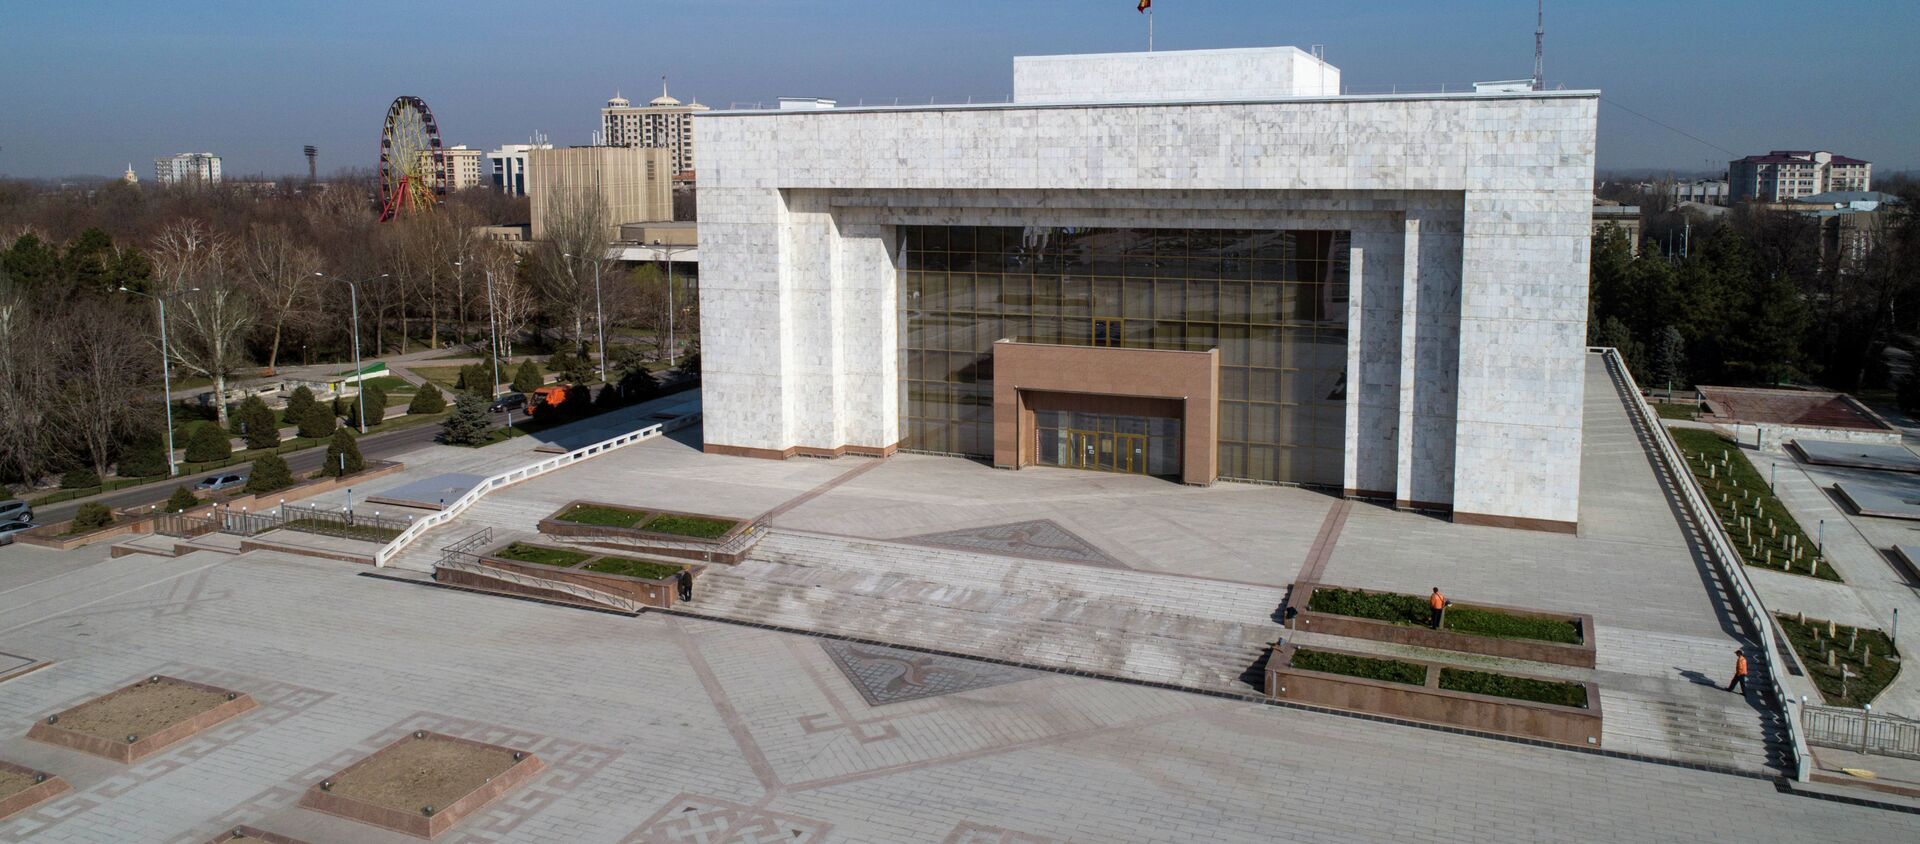 Закрытый на реконструкцию государственный исторический музей в Бишкеке. Архивное фото - Sputnik Кыргызстан, 1920, 03.11.2021